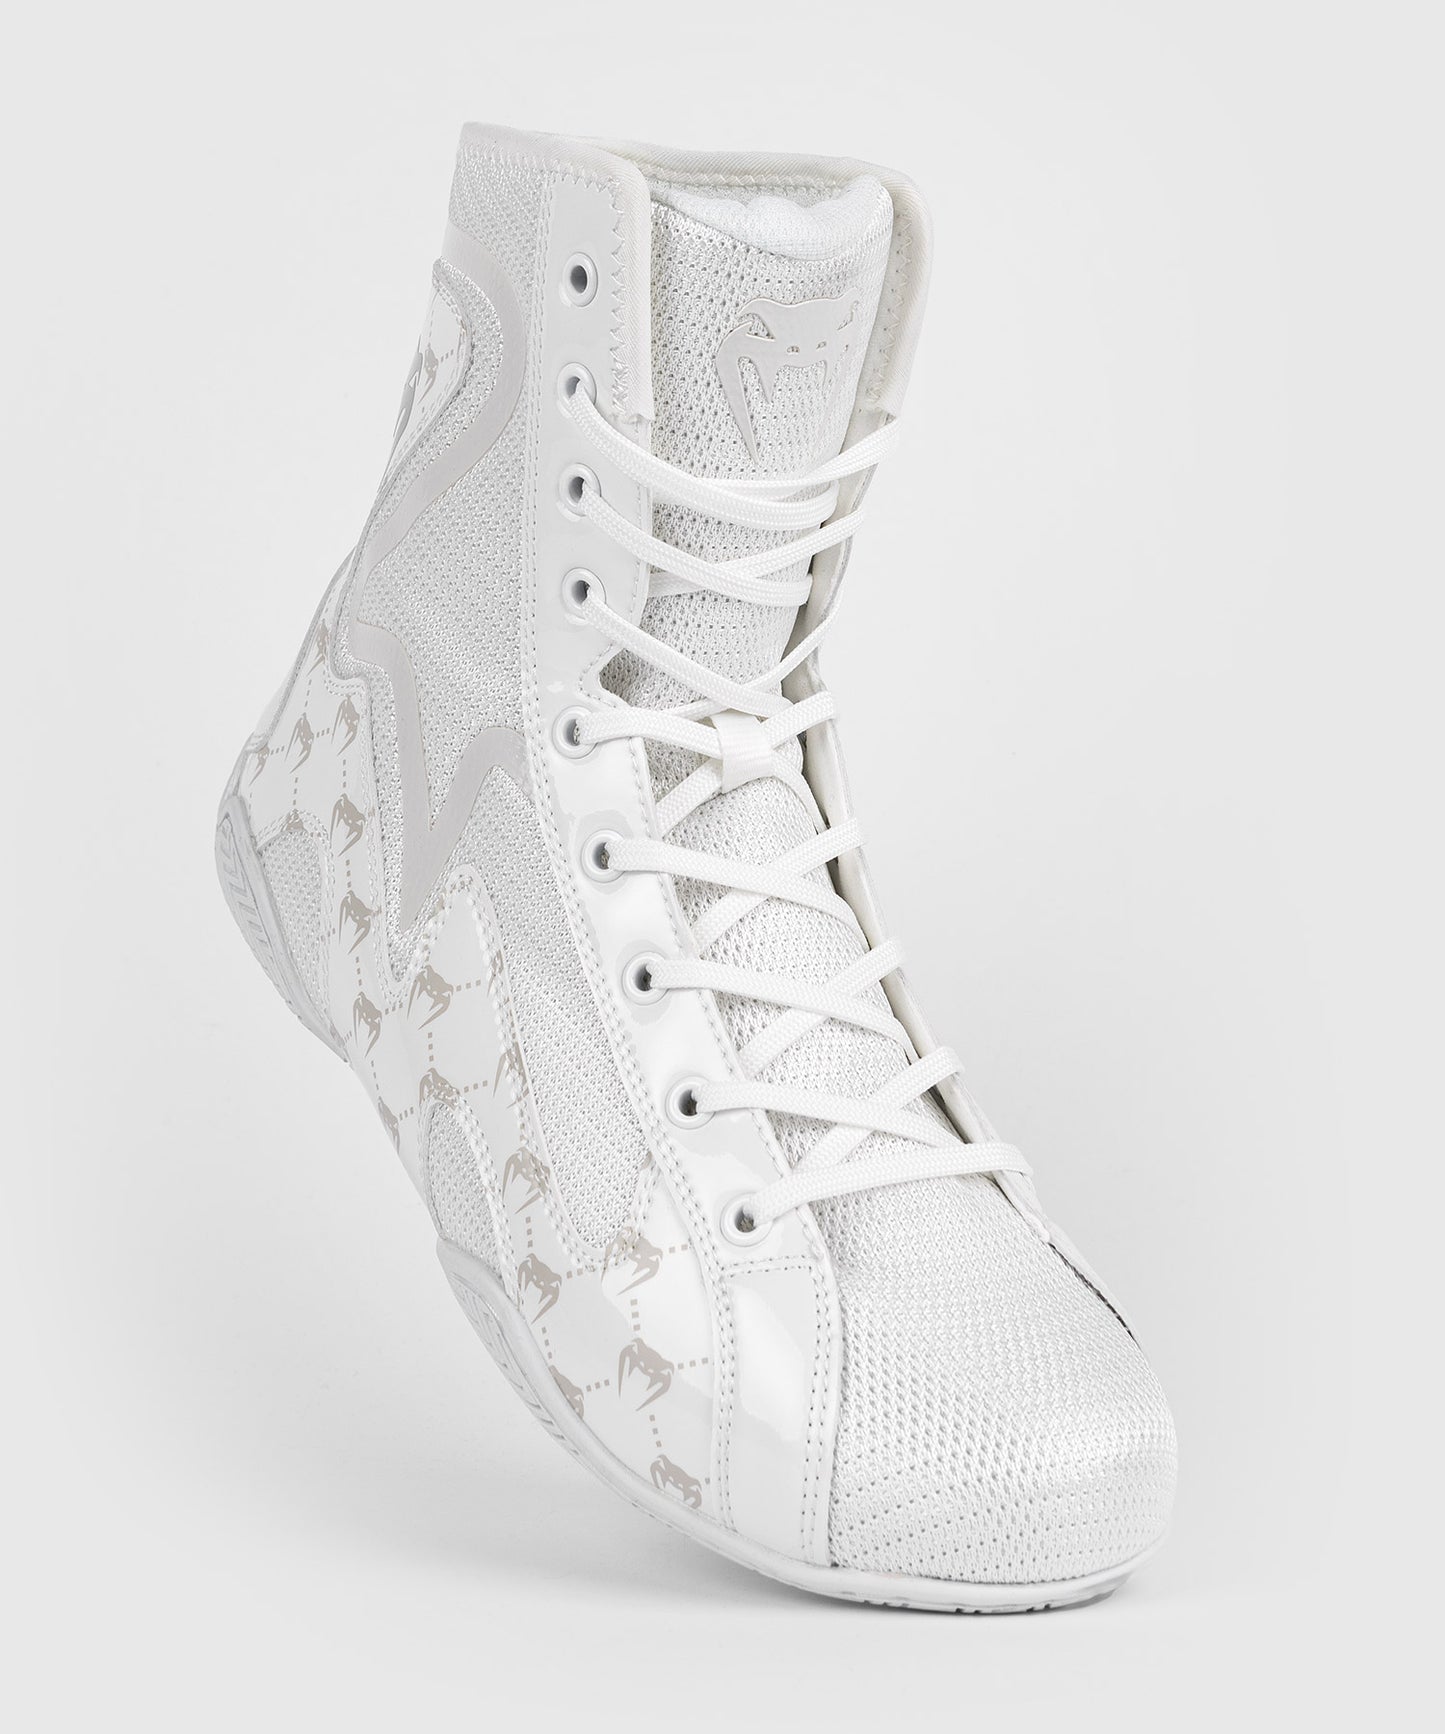 Venum Elite Evo Monogram Boxing Shoes - White/Off-White